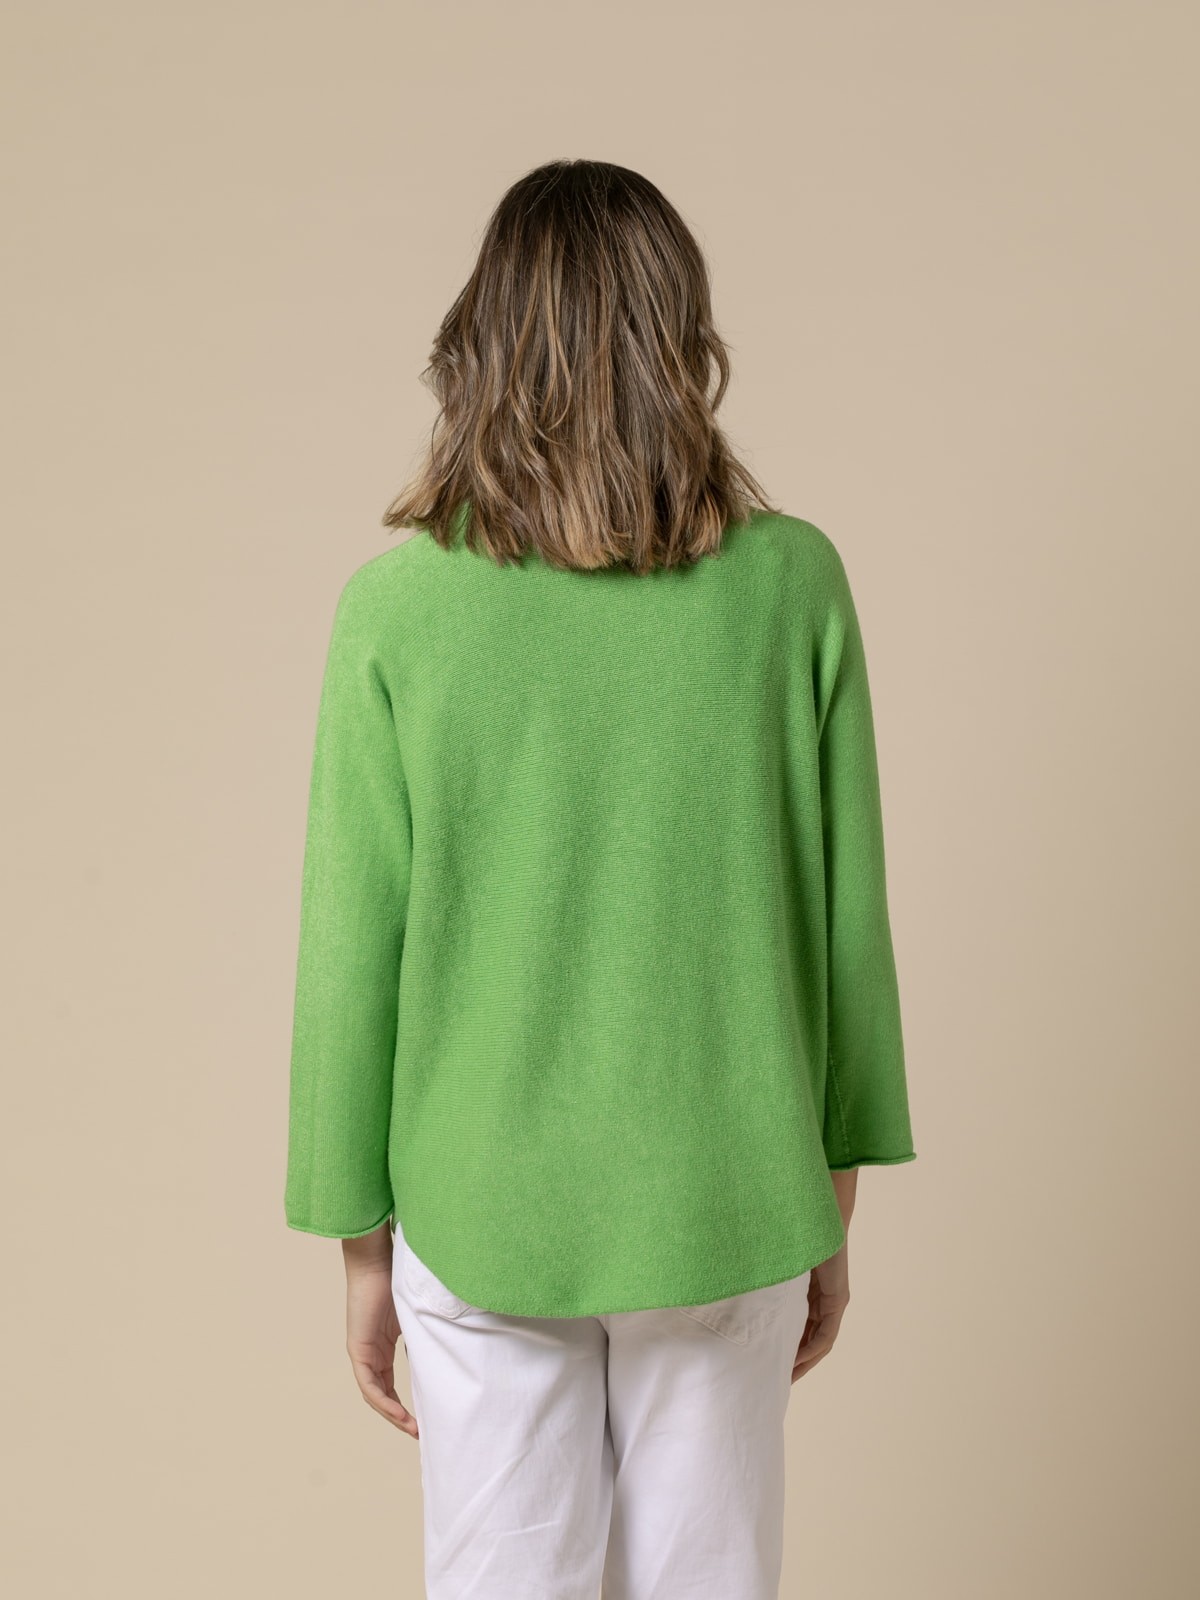 Jersey basic cuello alto cachemire touch color Verde claro